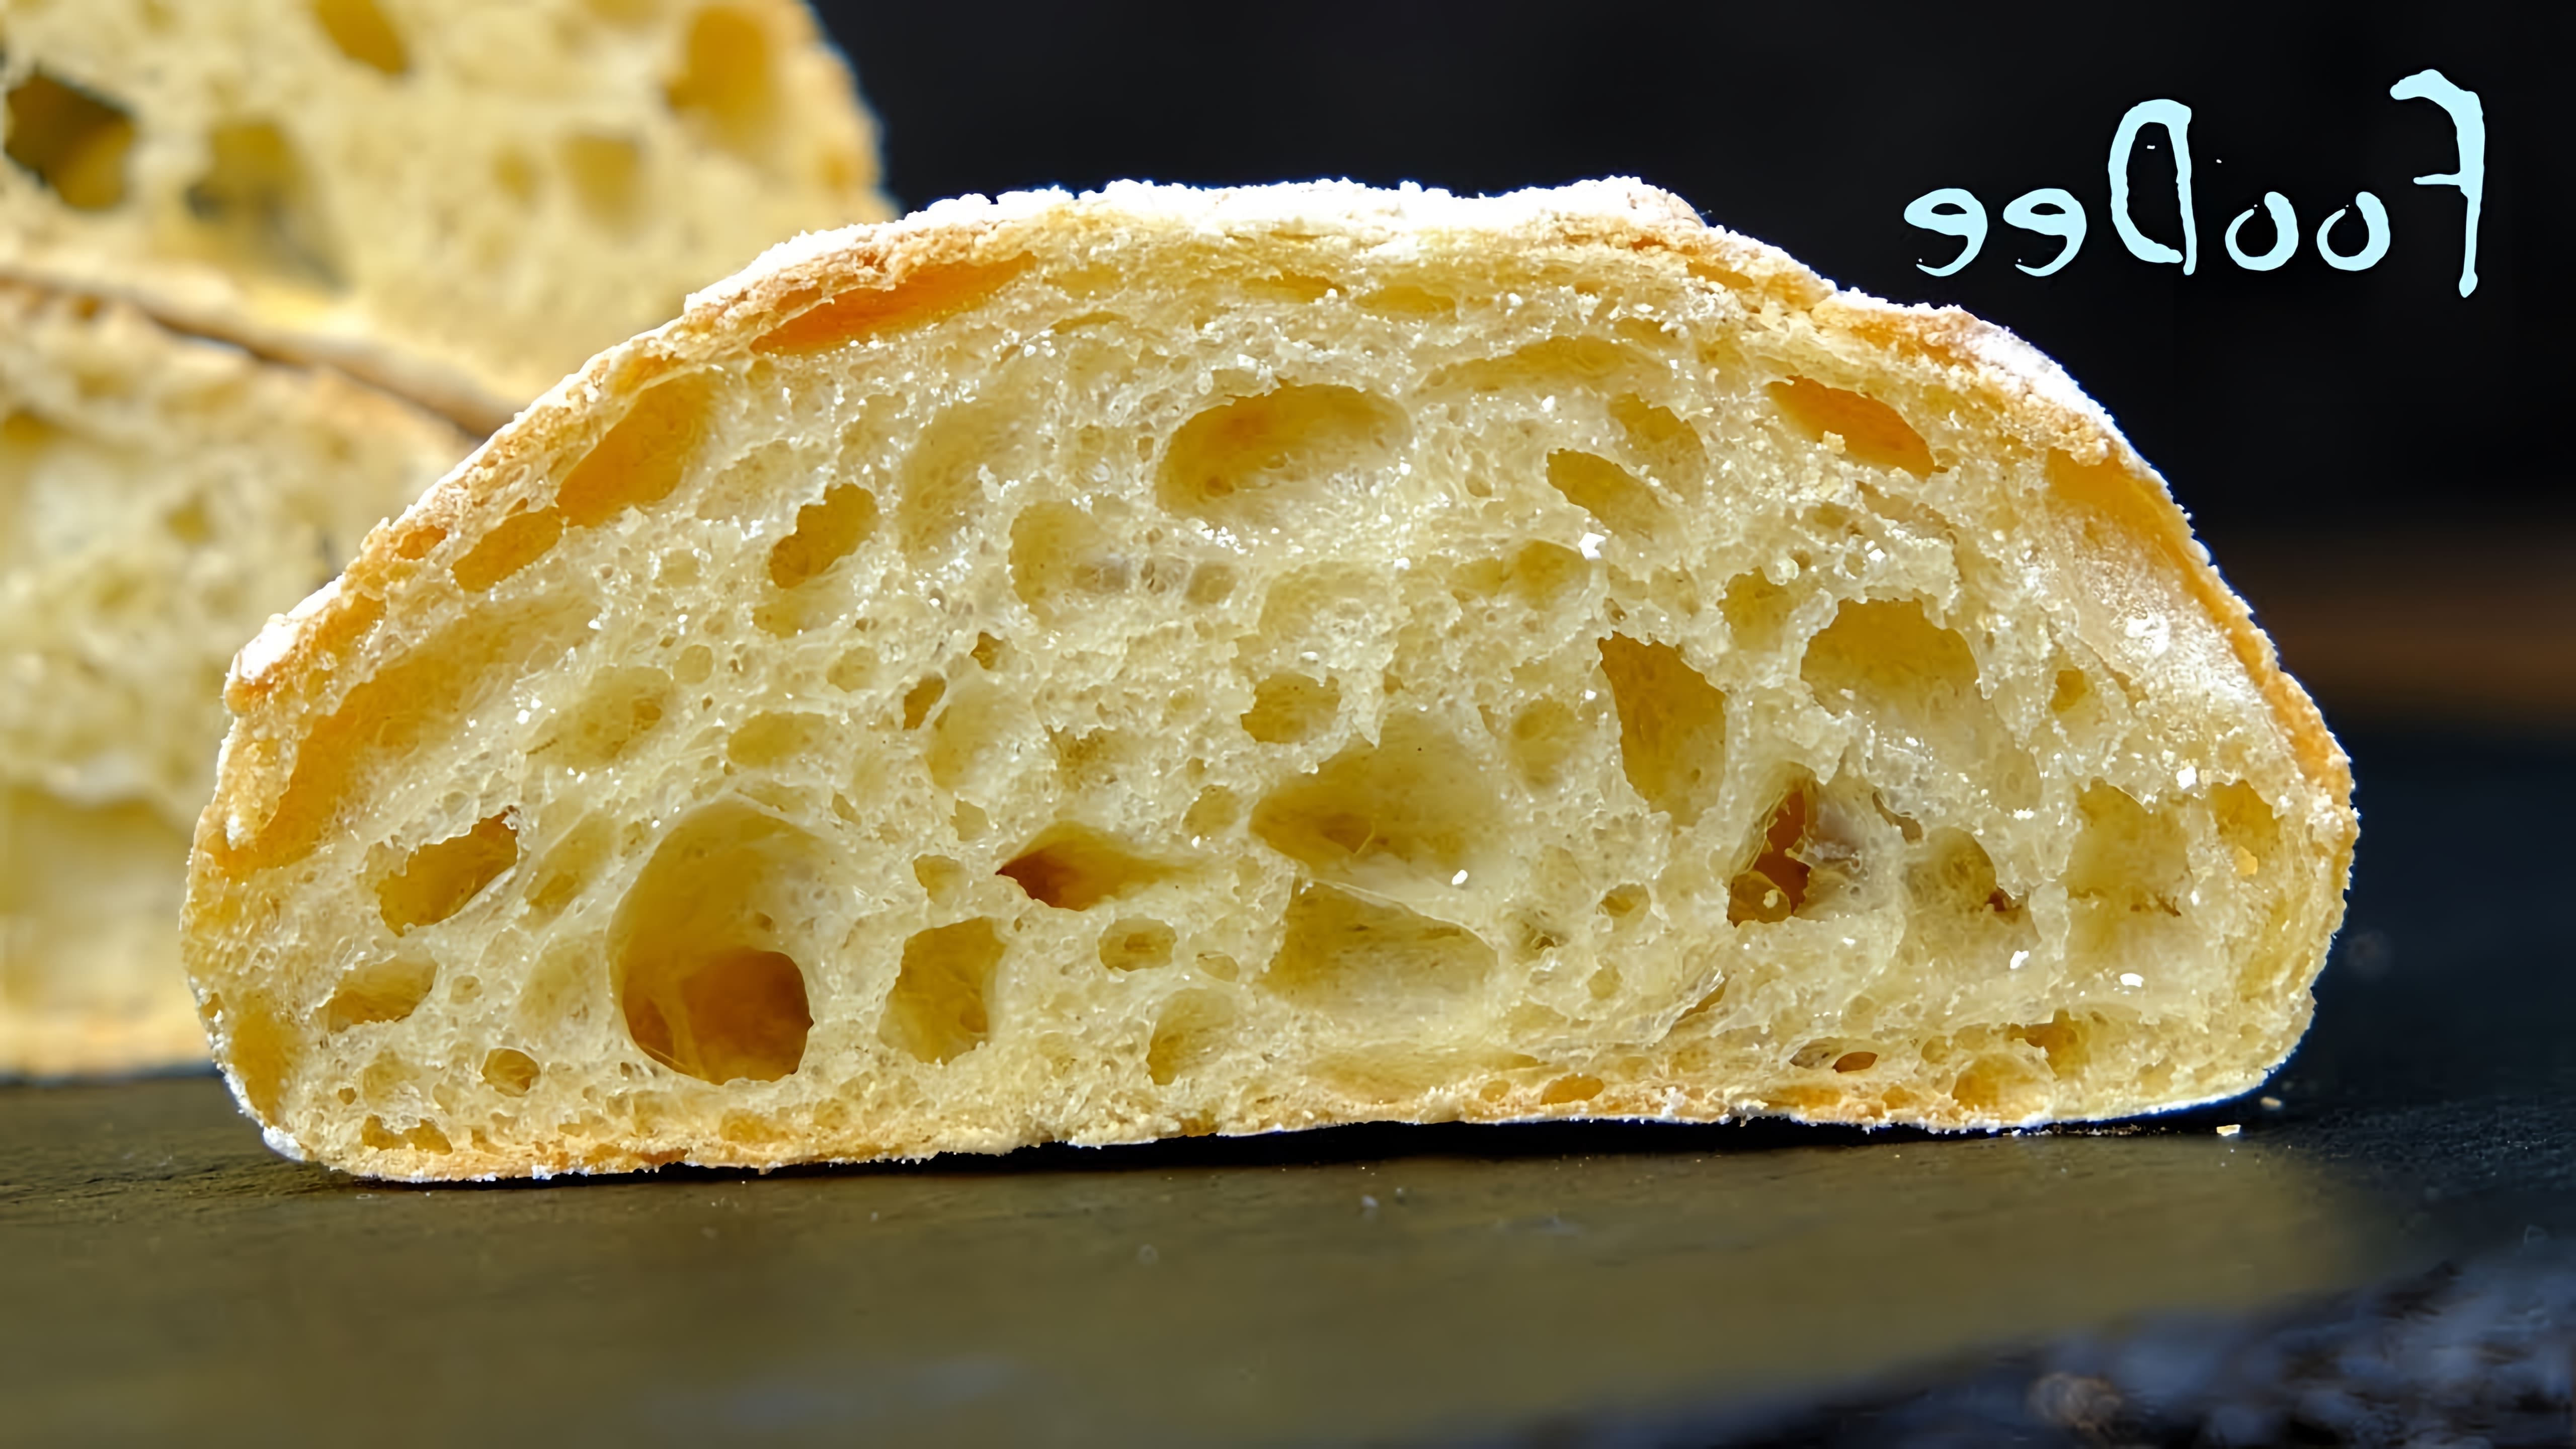 В этом видео демонстрируется процесс приготовления итальянского хлеба Чиабатта в домашних условиях